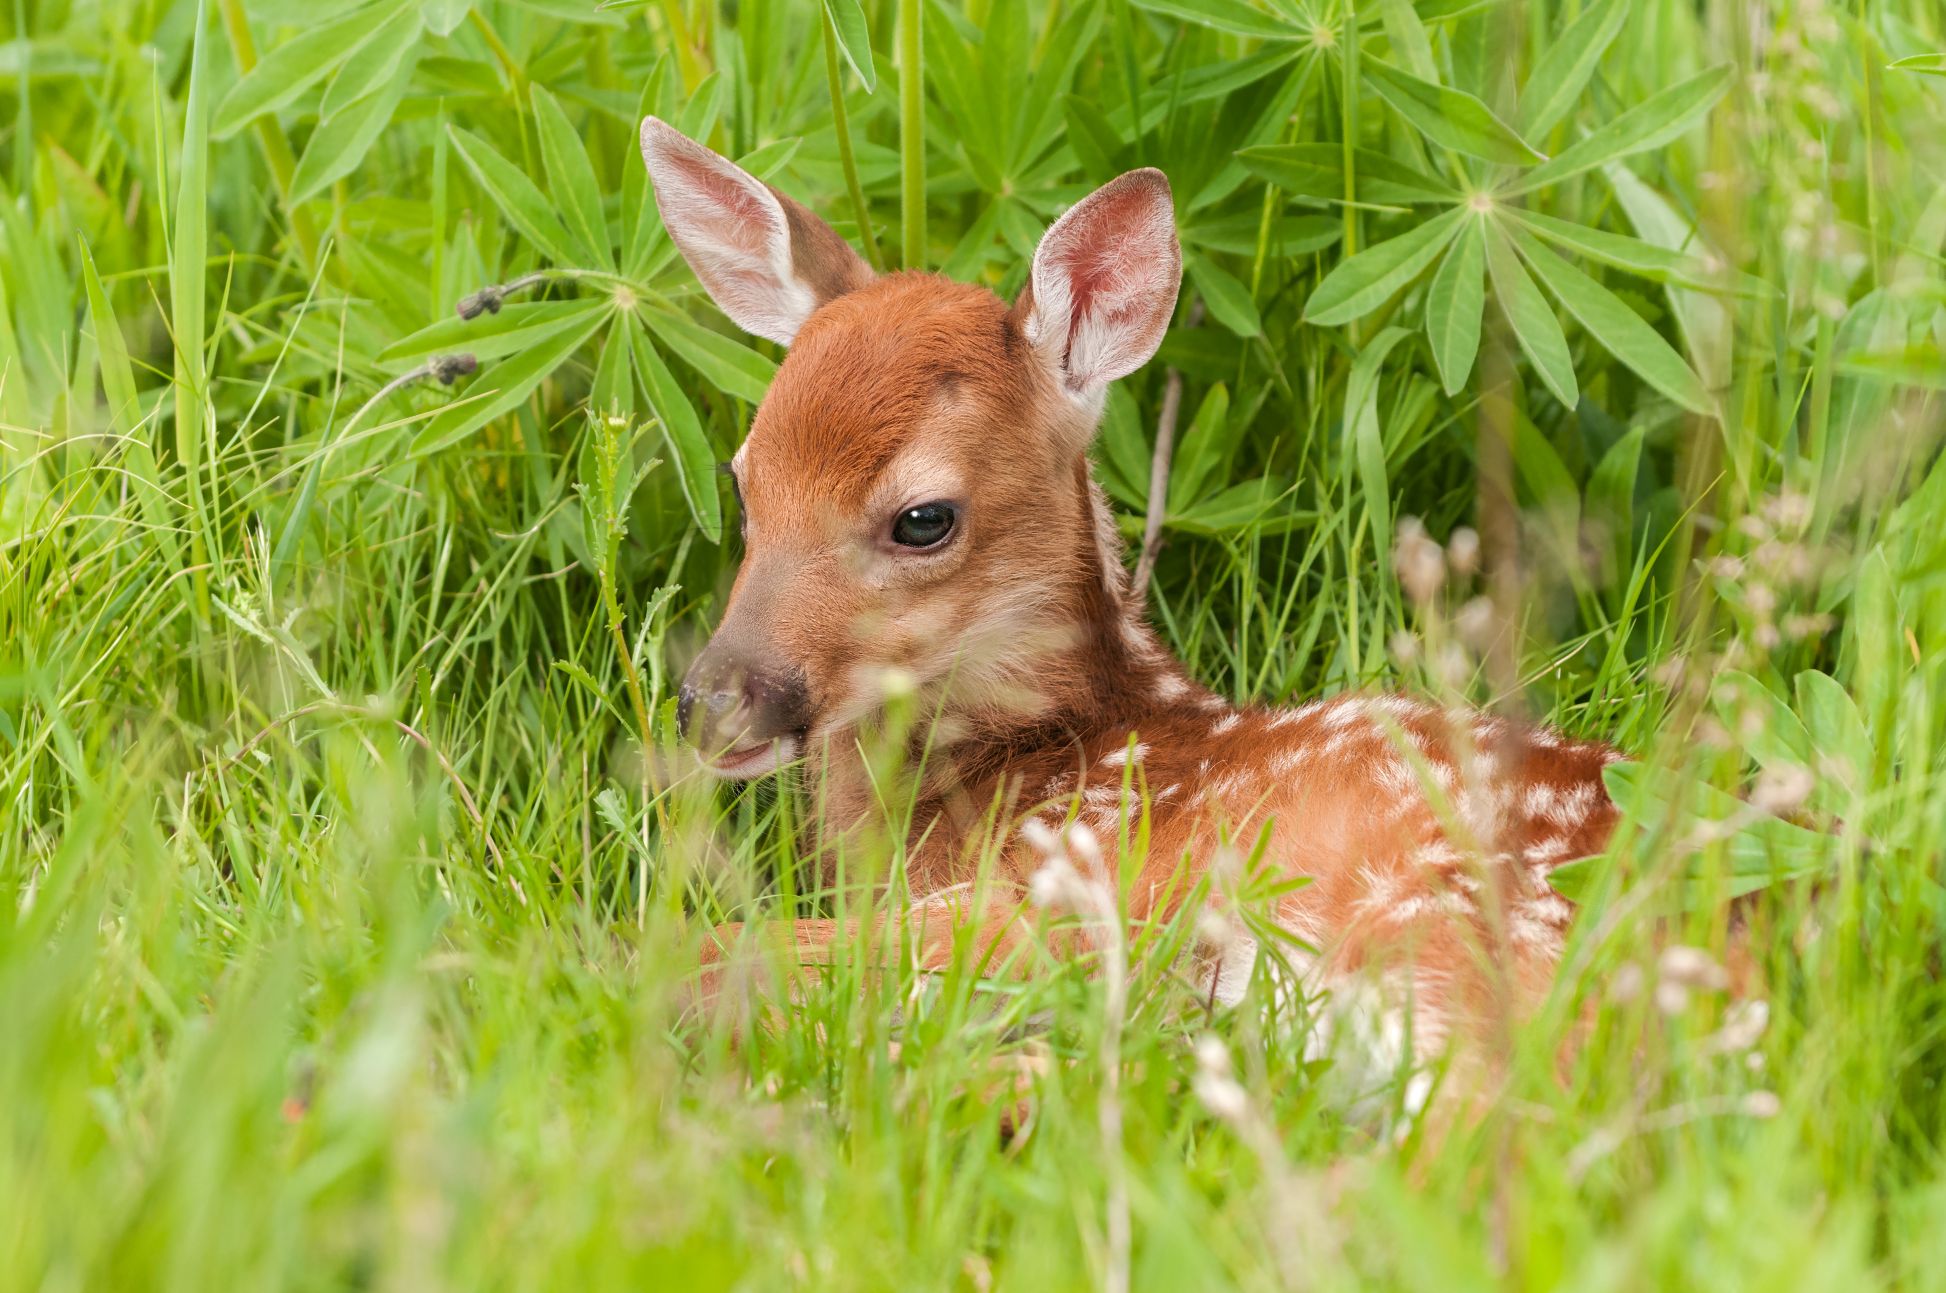 baby deer in the grass